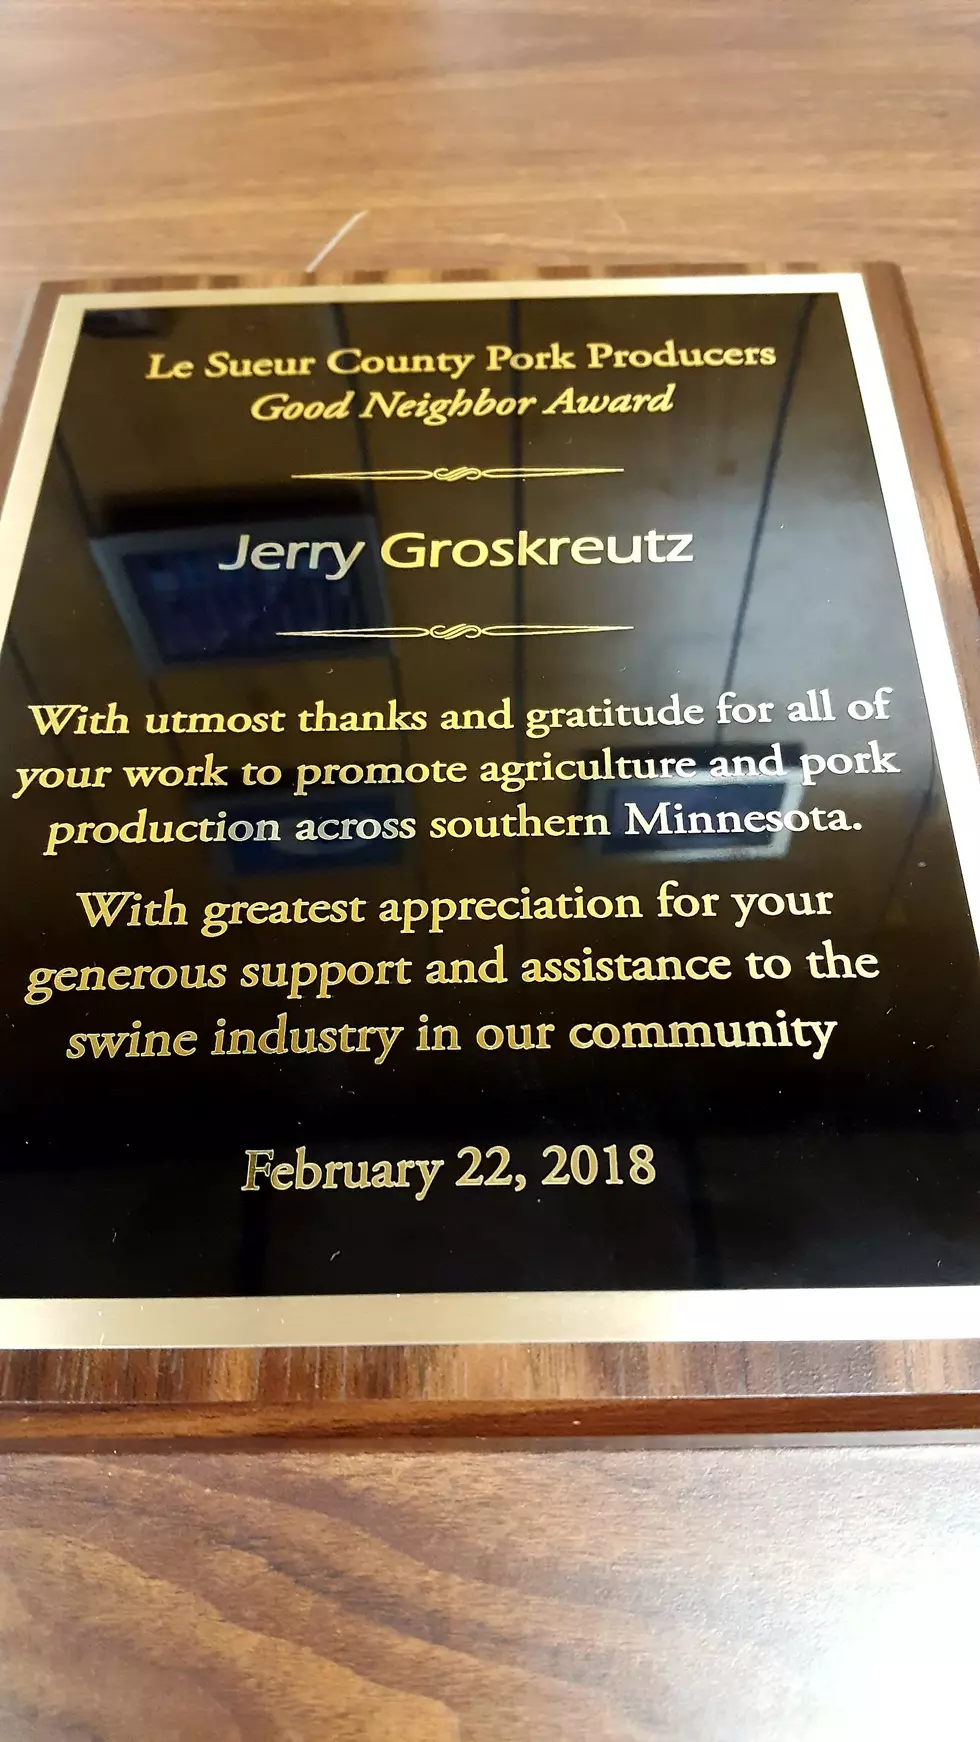 Local Farm Director Wins ‘Good Neighbor’ Award